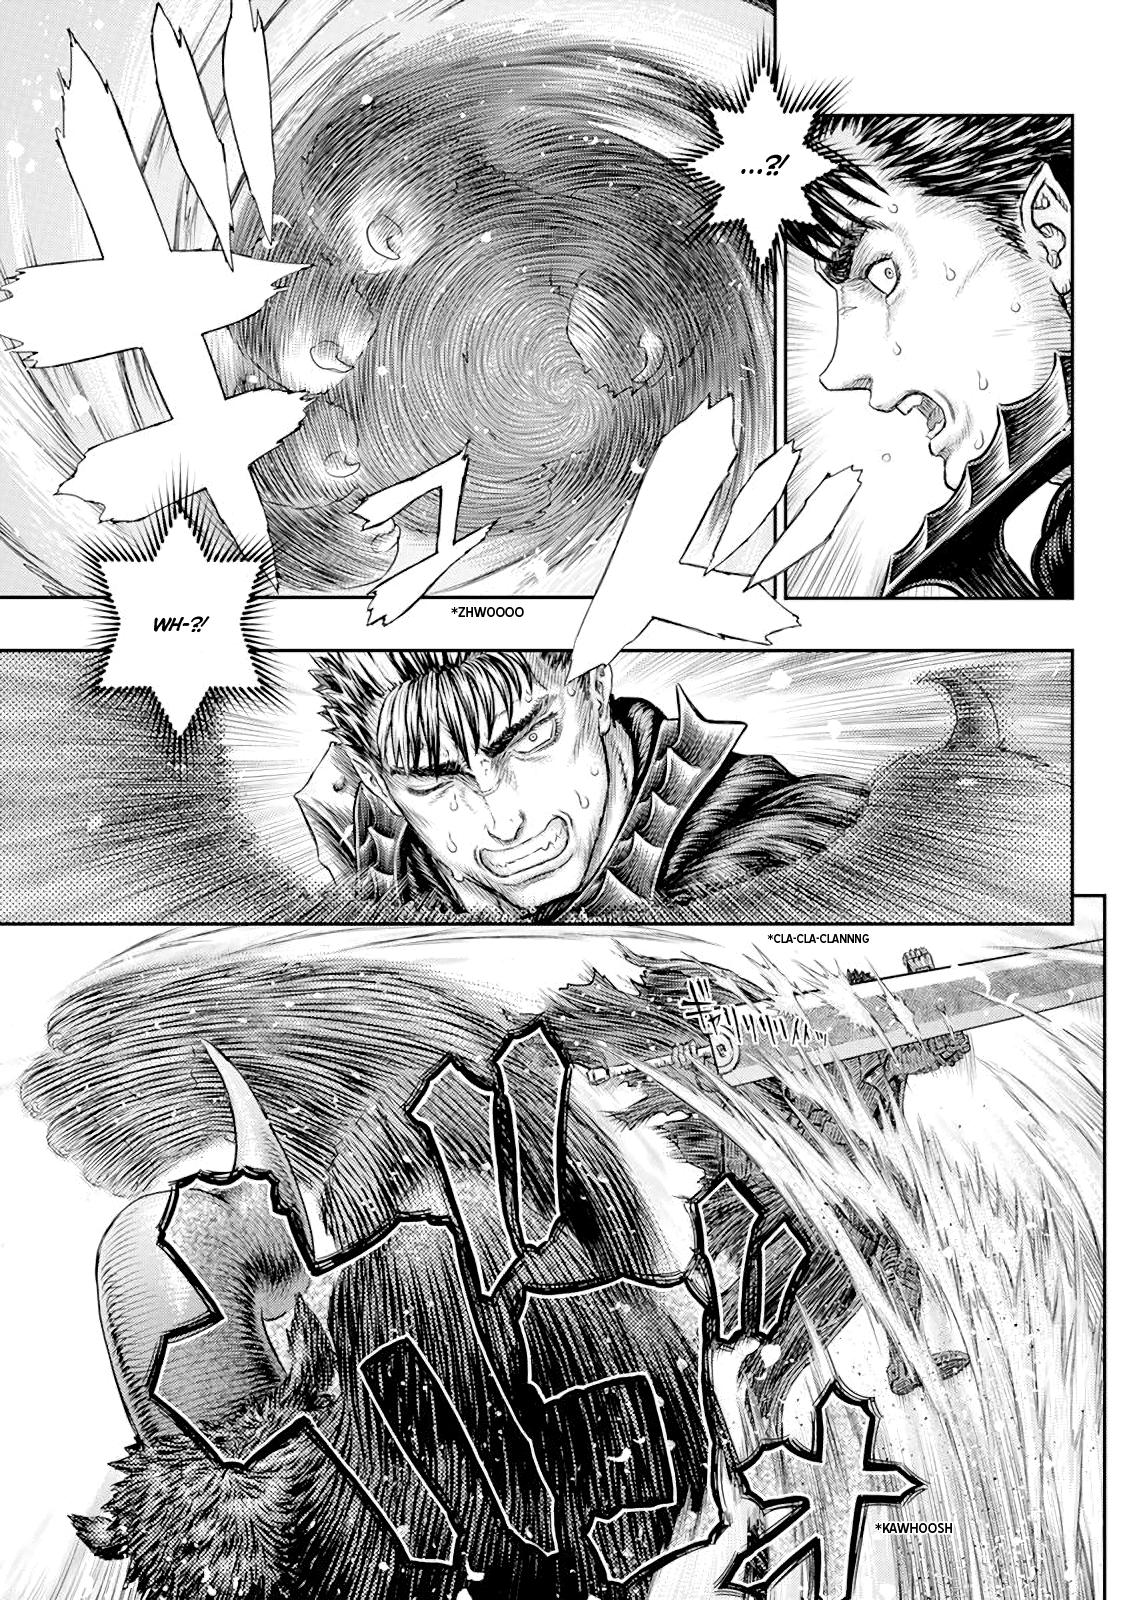 Berserk Manga Chapter 367 image 03